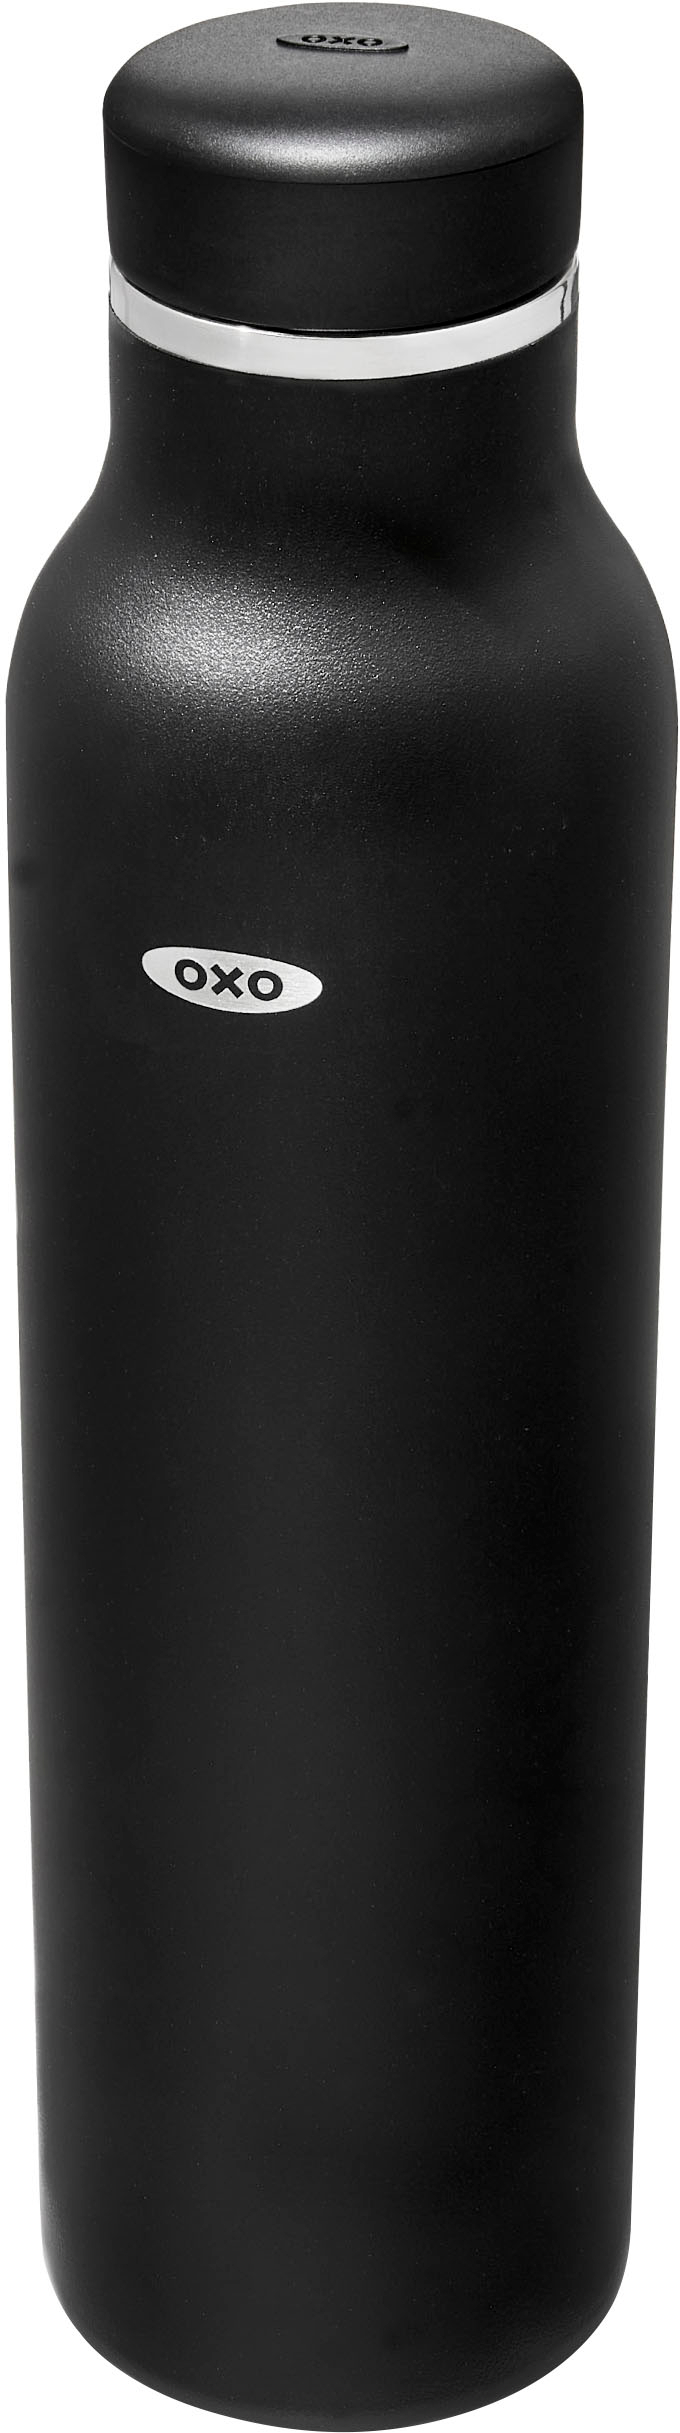 Oxo Strive Advance Bottle